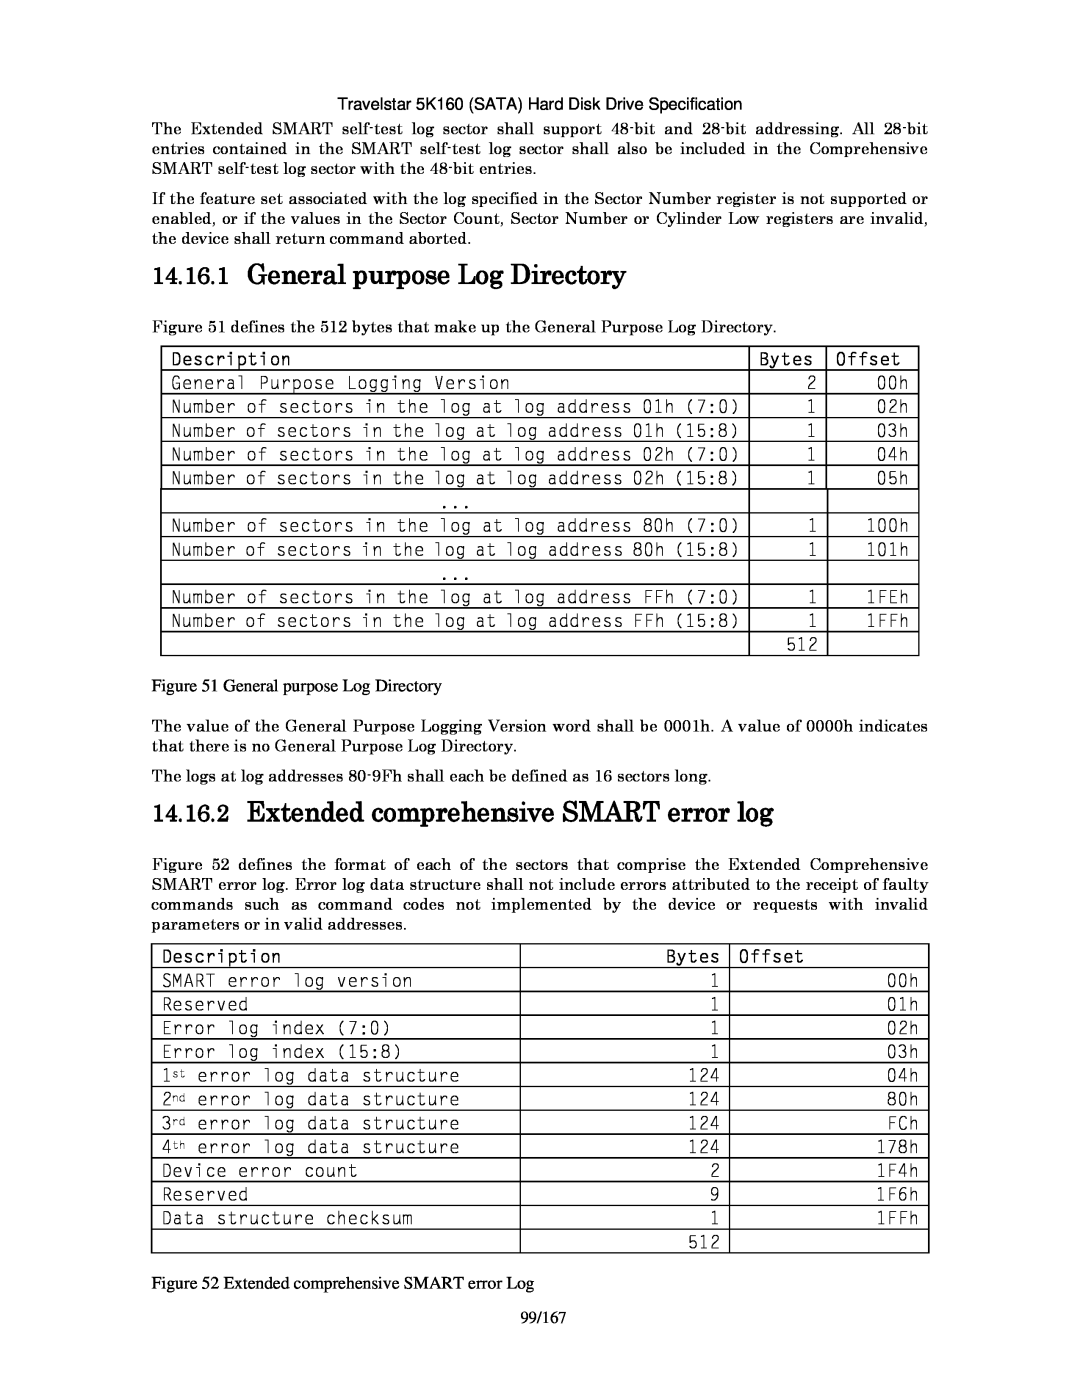 Hitachi HTS541612J9SA00 General purpose Log Directory, Extended comprehensive SMART error log, Description, Bytes, Offset 